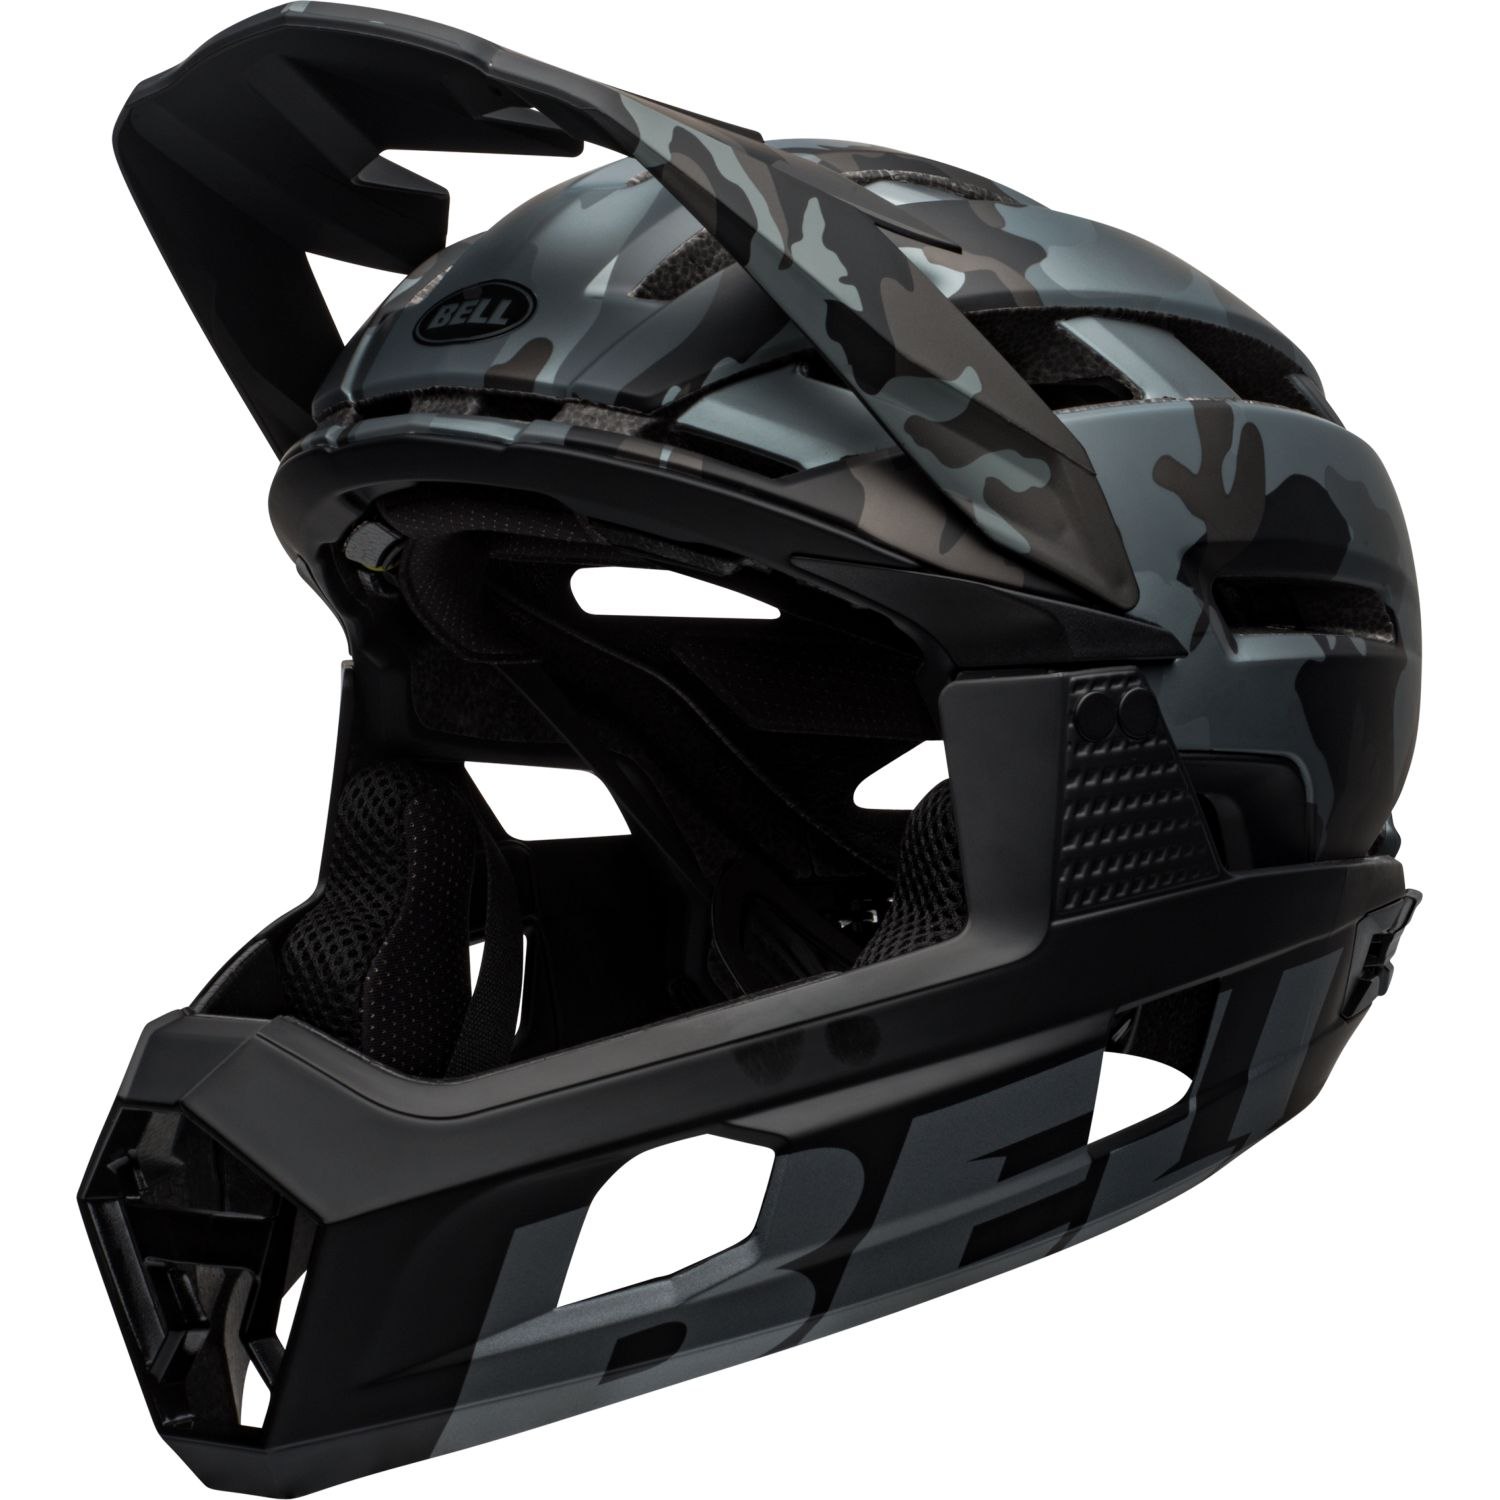 Produktbild von Bell Super Air R Spherical Helm - matte/gloss black camo